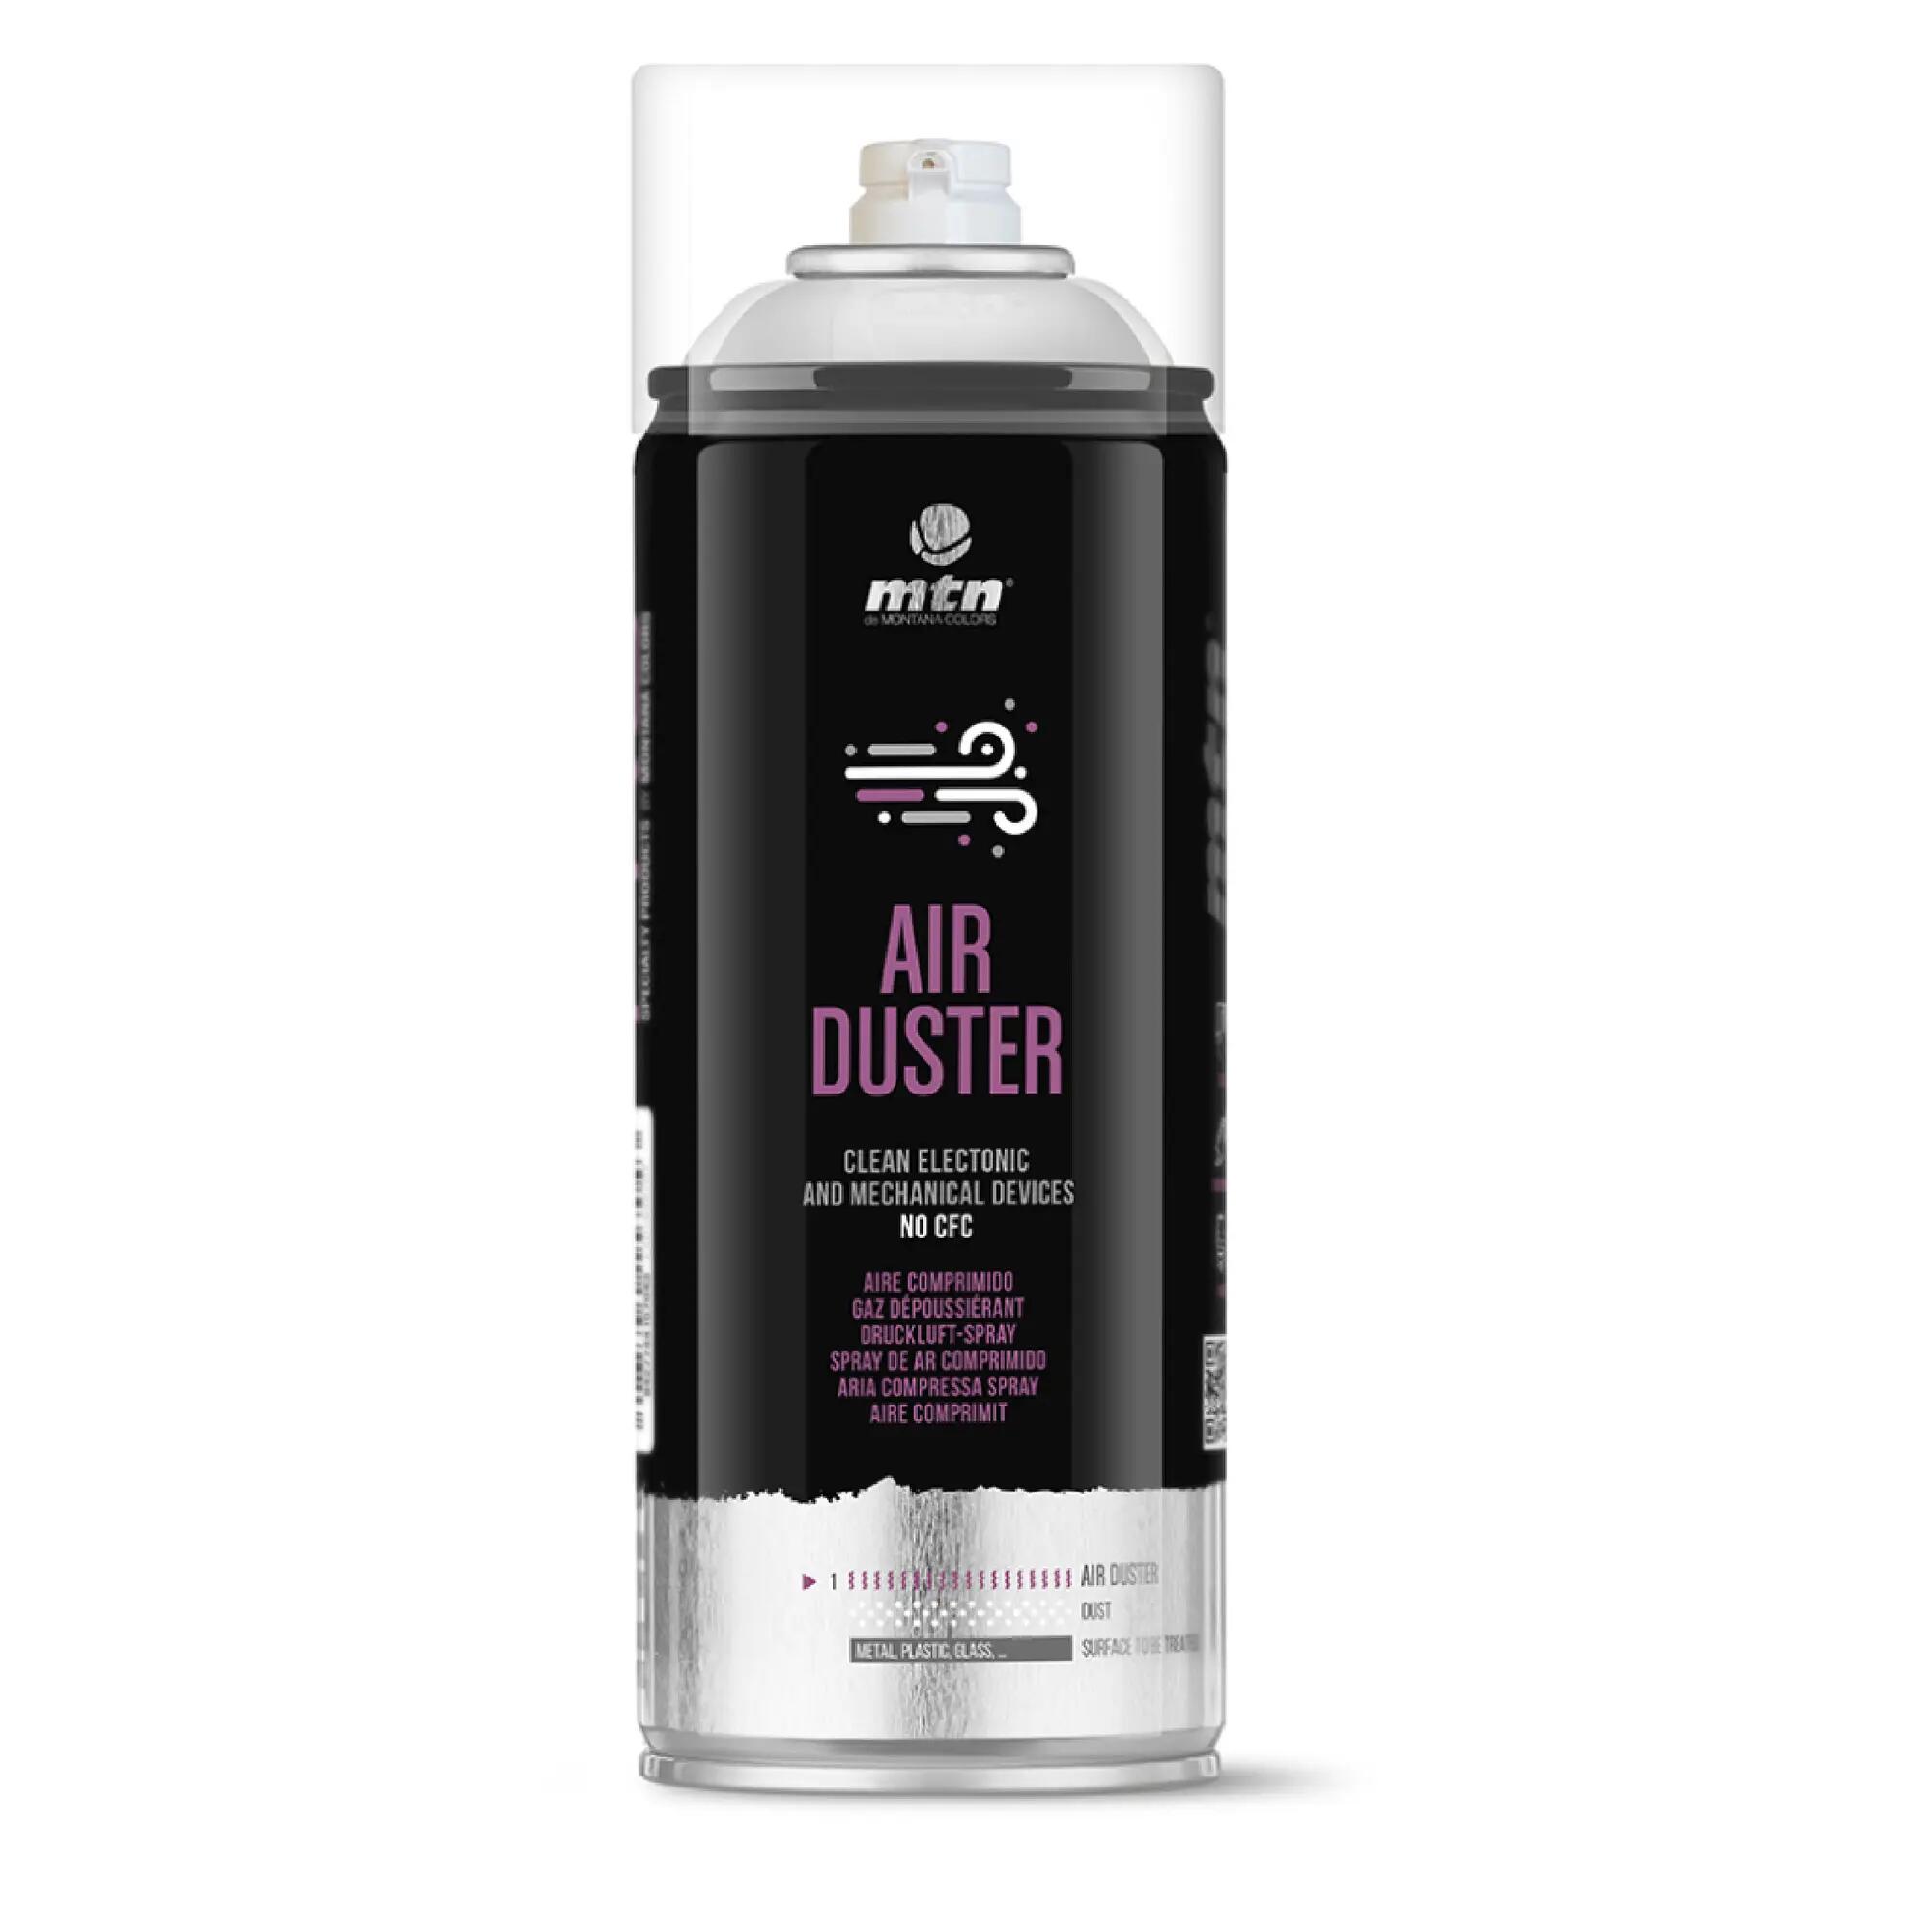 Spray aire comprimido 400ml